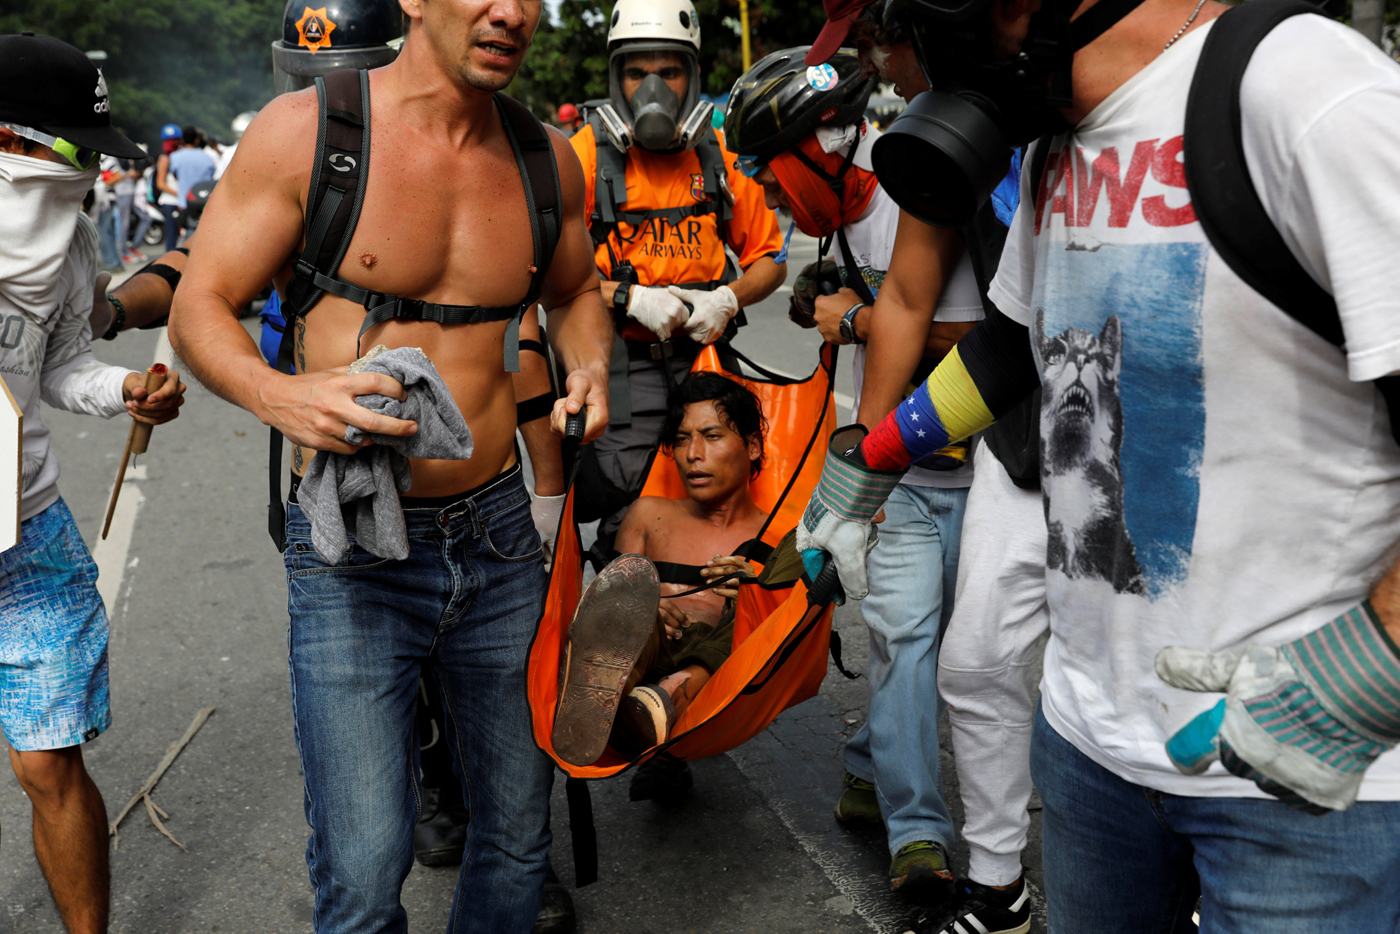 Reuters / joven quemado en las protestas de este #3May